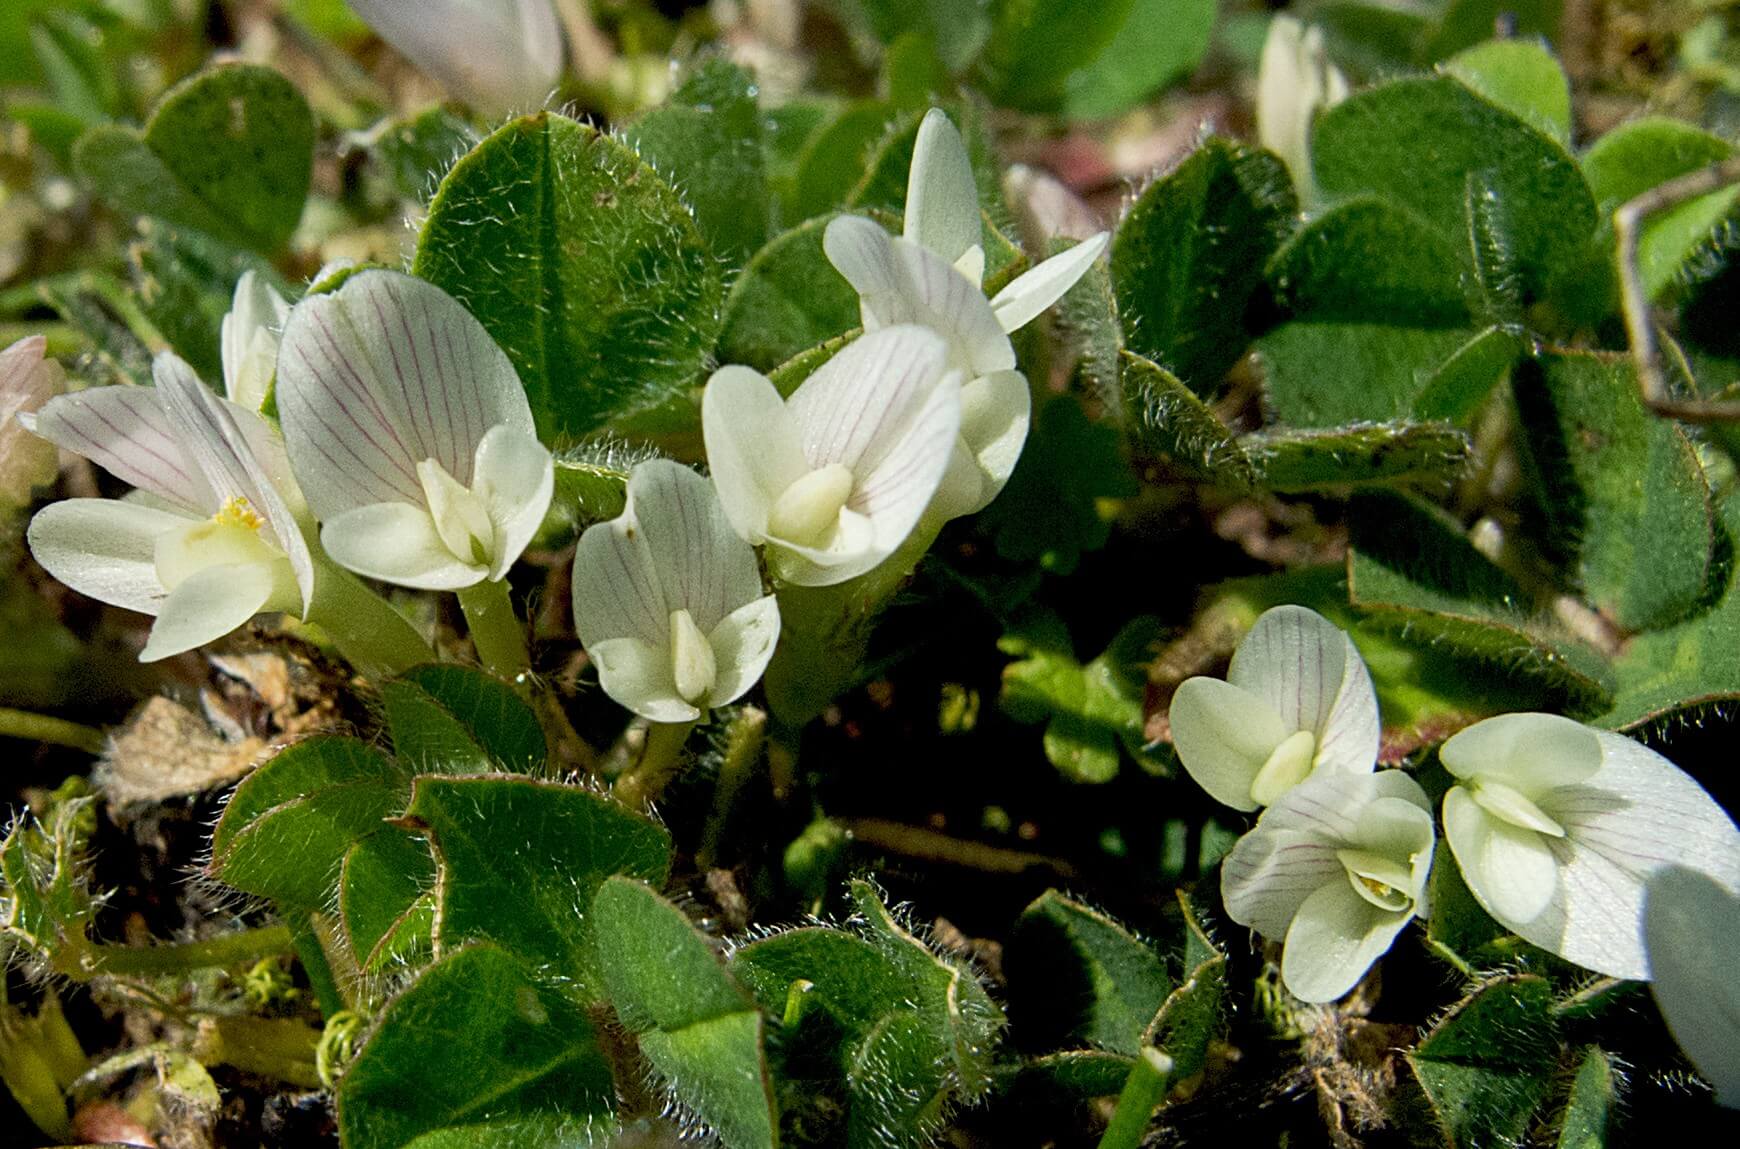 Subterranean clover (Trifolium subterraneum)